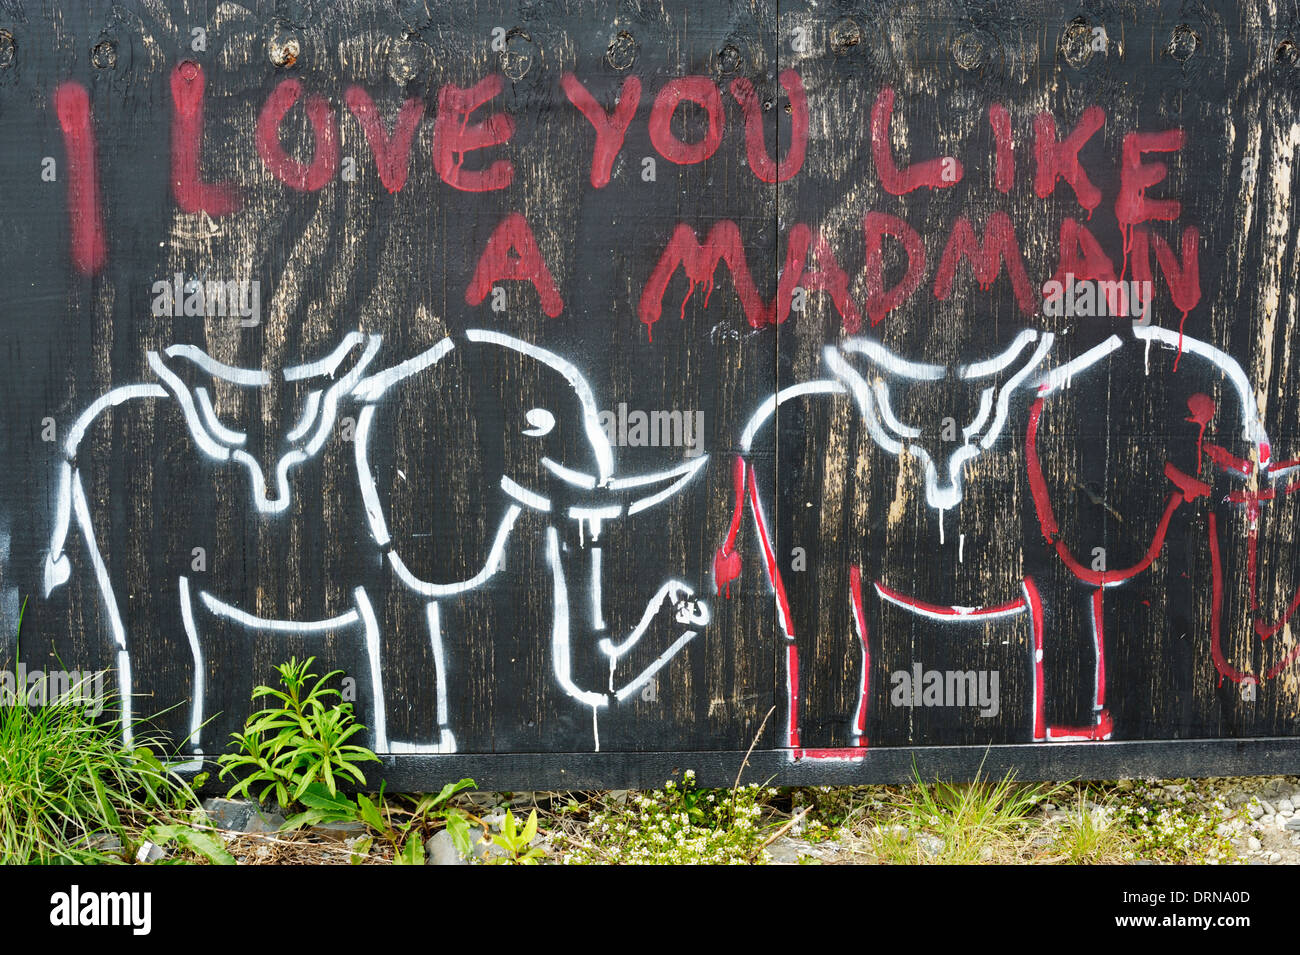 Graffiti, rote schreiben auf einem schwarzen Hintergrund 'ich wie ein verrückter liebe dich' mit Elefanten Zeichnungen, Wales, UK Stockfoto